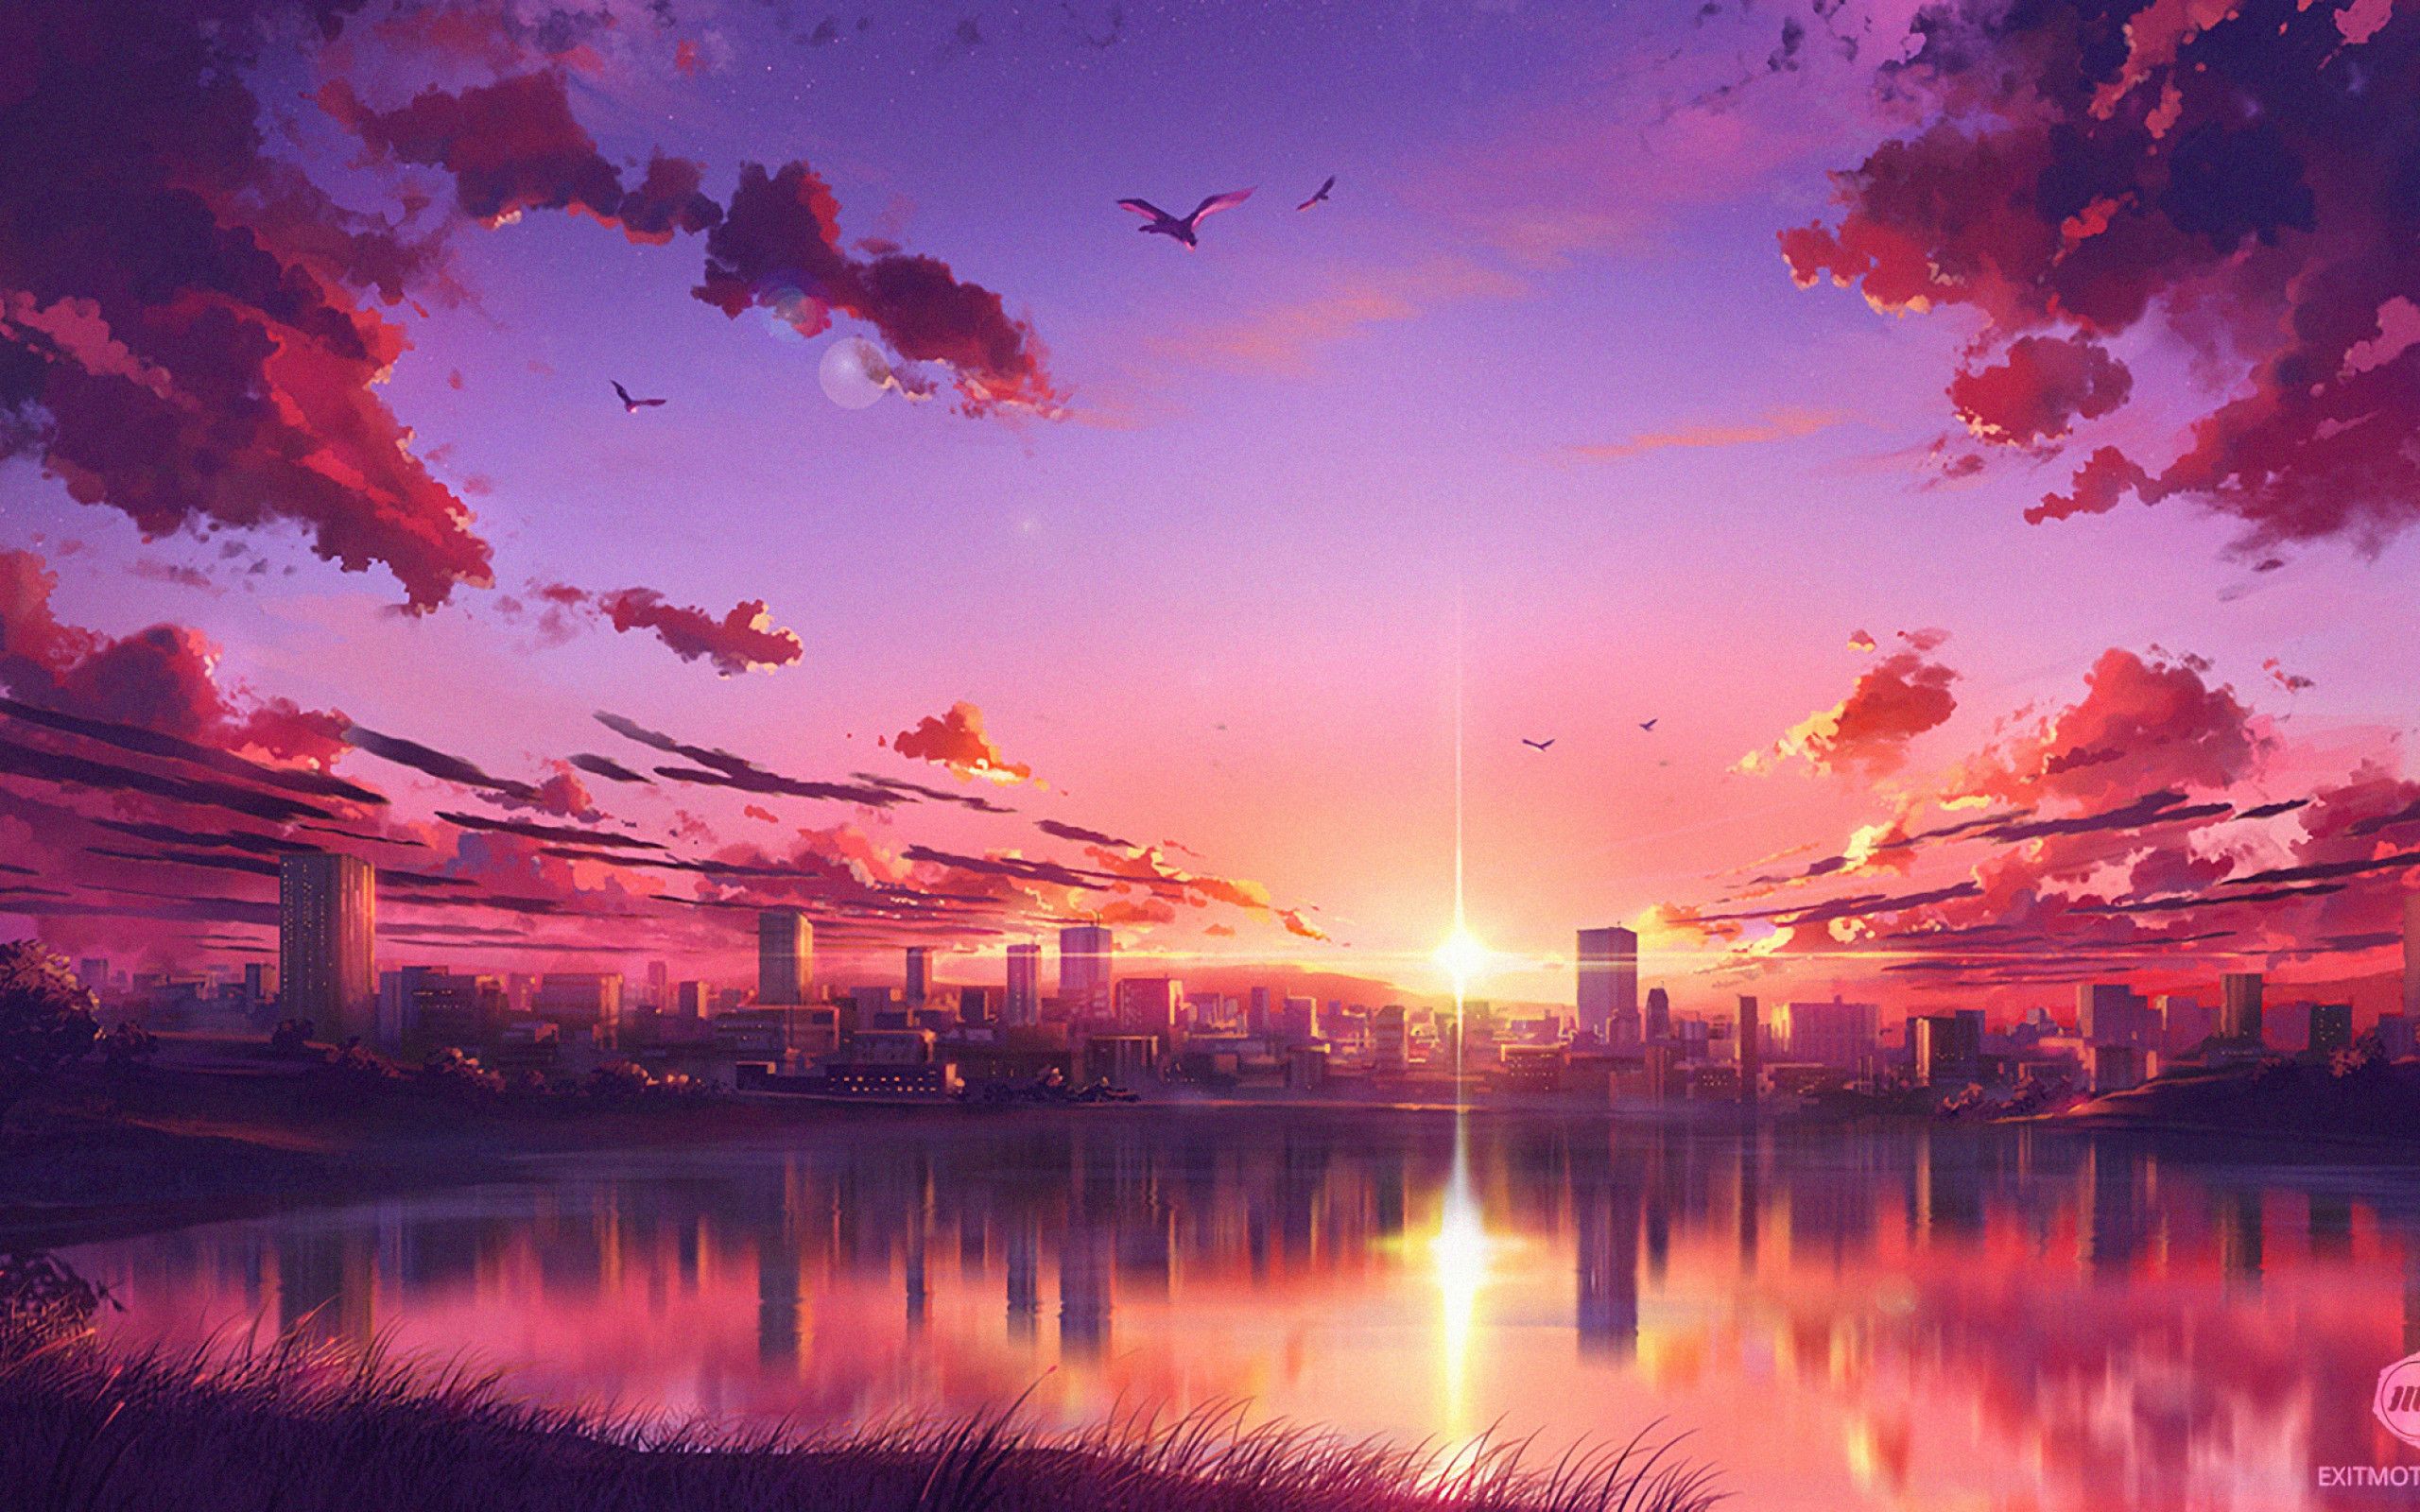 Bạn muốn có trải nghiệm tuyệt vời nhất về Anime? Hãy tận hưởng màn hình rực rỡ cùng với hình nền Anime hoàng hôn 4k này. Sự kết hợp giữa đồ họa sinh động, nét vẽ tinh tế và màu sắc tuyệt đẹp sẽ khiến bạn có cảm giác như mình đang ở một thế giới khác.